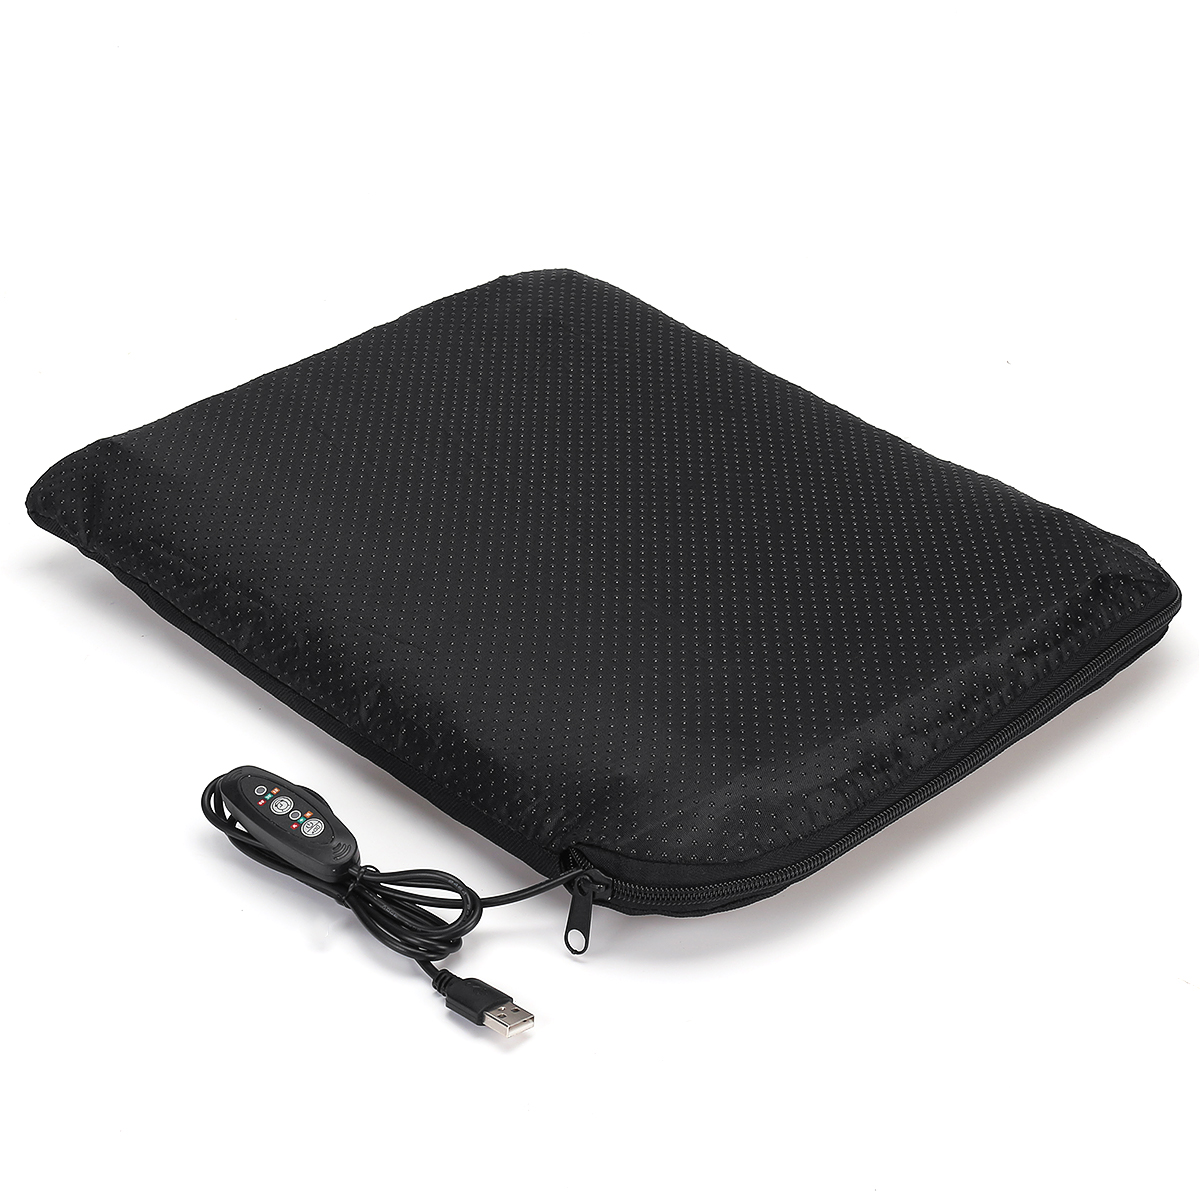 Tragbare elektrische USB-Heizkissen Kissenmatte Winterwärmer Camping mit Tasche für Reisende Fahrer Büroangestellte